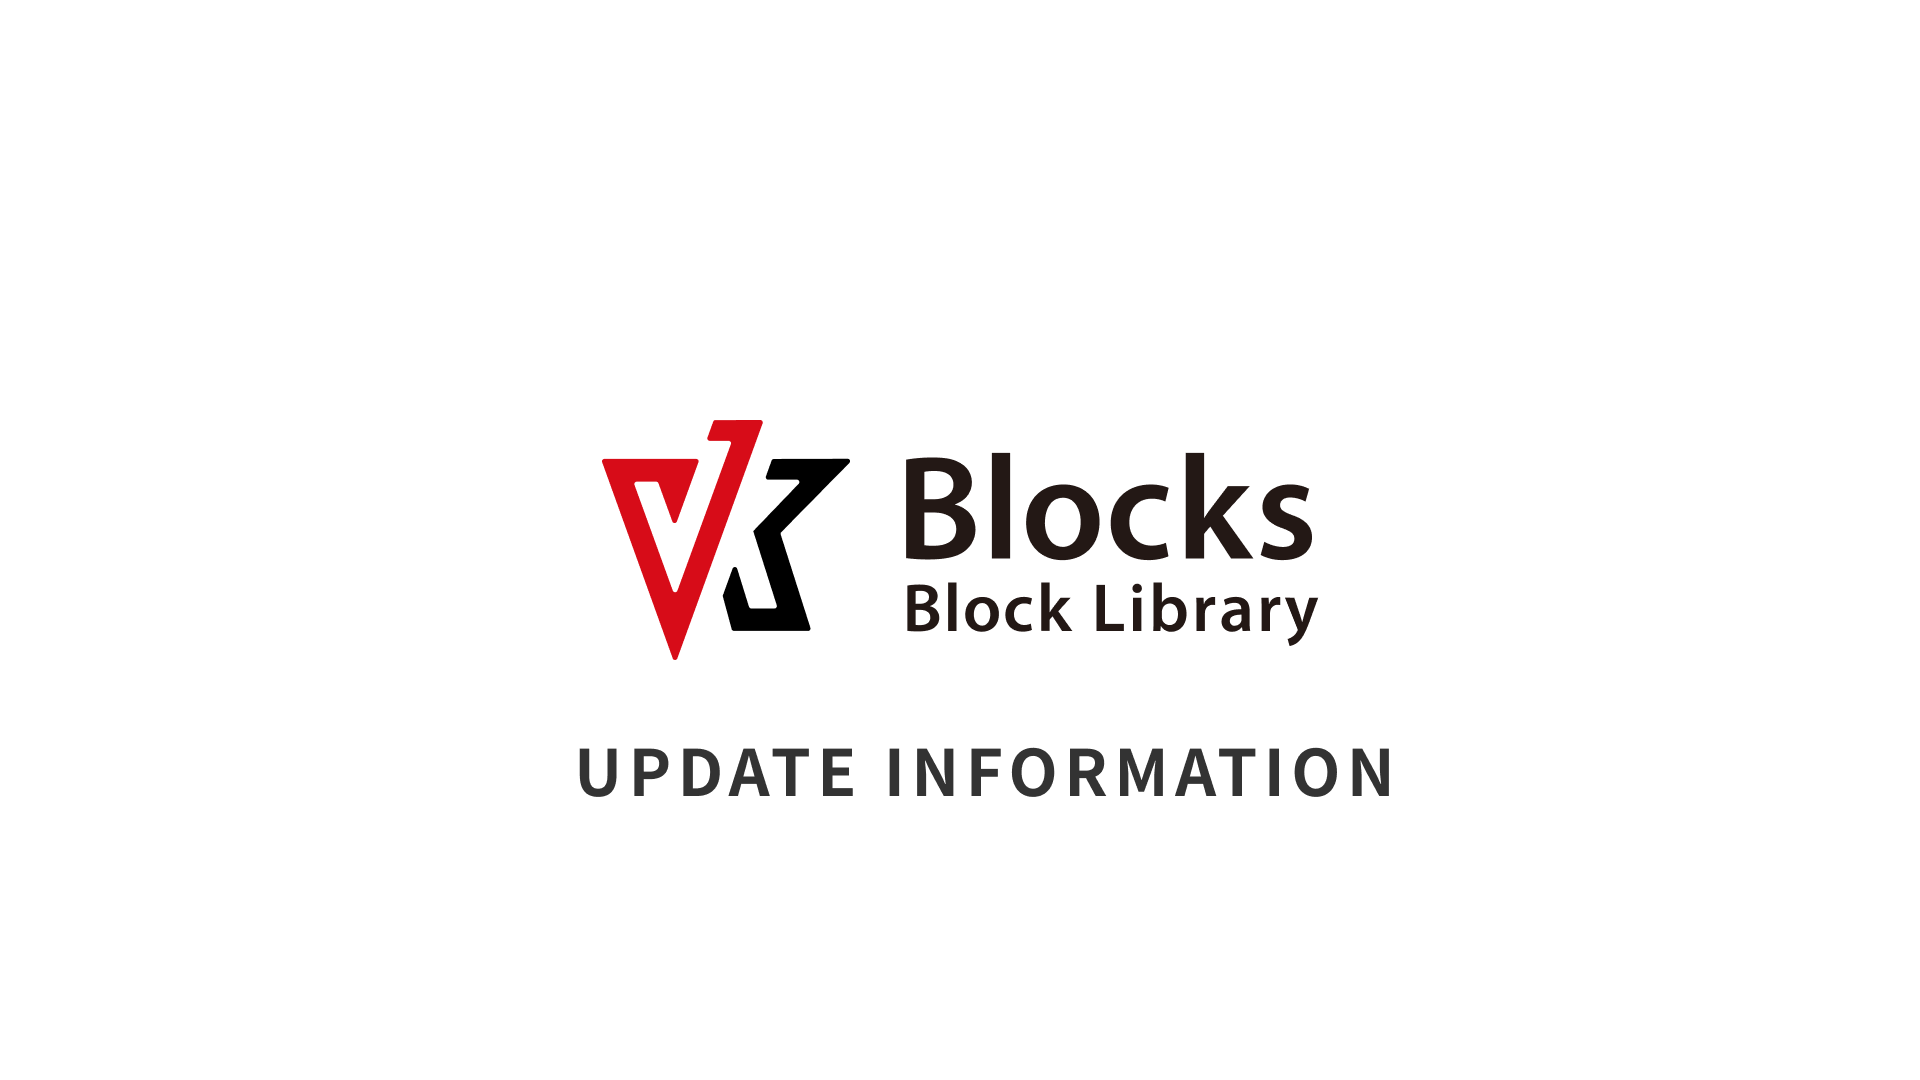 VK Blocks Update Information